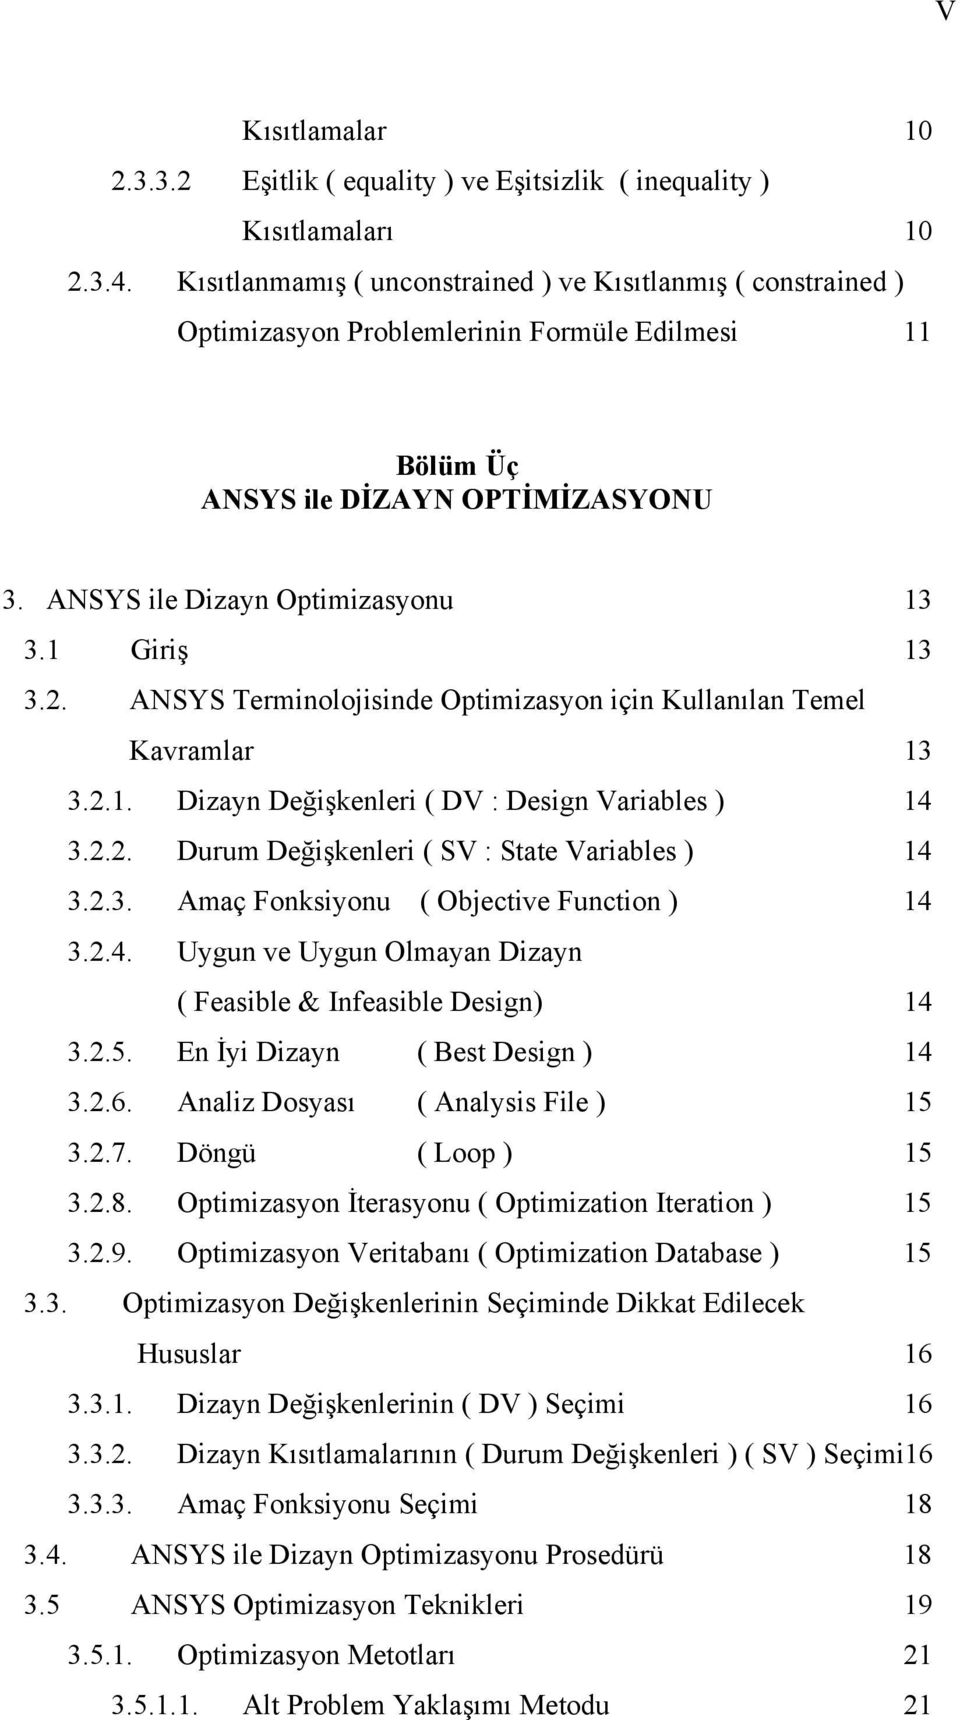 1 Giriş 13 3.2. ANSYS Terminolojisinde Optimizasyon için Kullanılan Temel Kavramlar 13 3.2.1. Dizayn Değişkenleri ( DV : Design Variables ) 14 3.2.2. Durum Değişkenleri ( SV : State Variables ) 14 3.